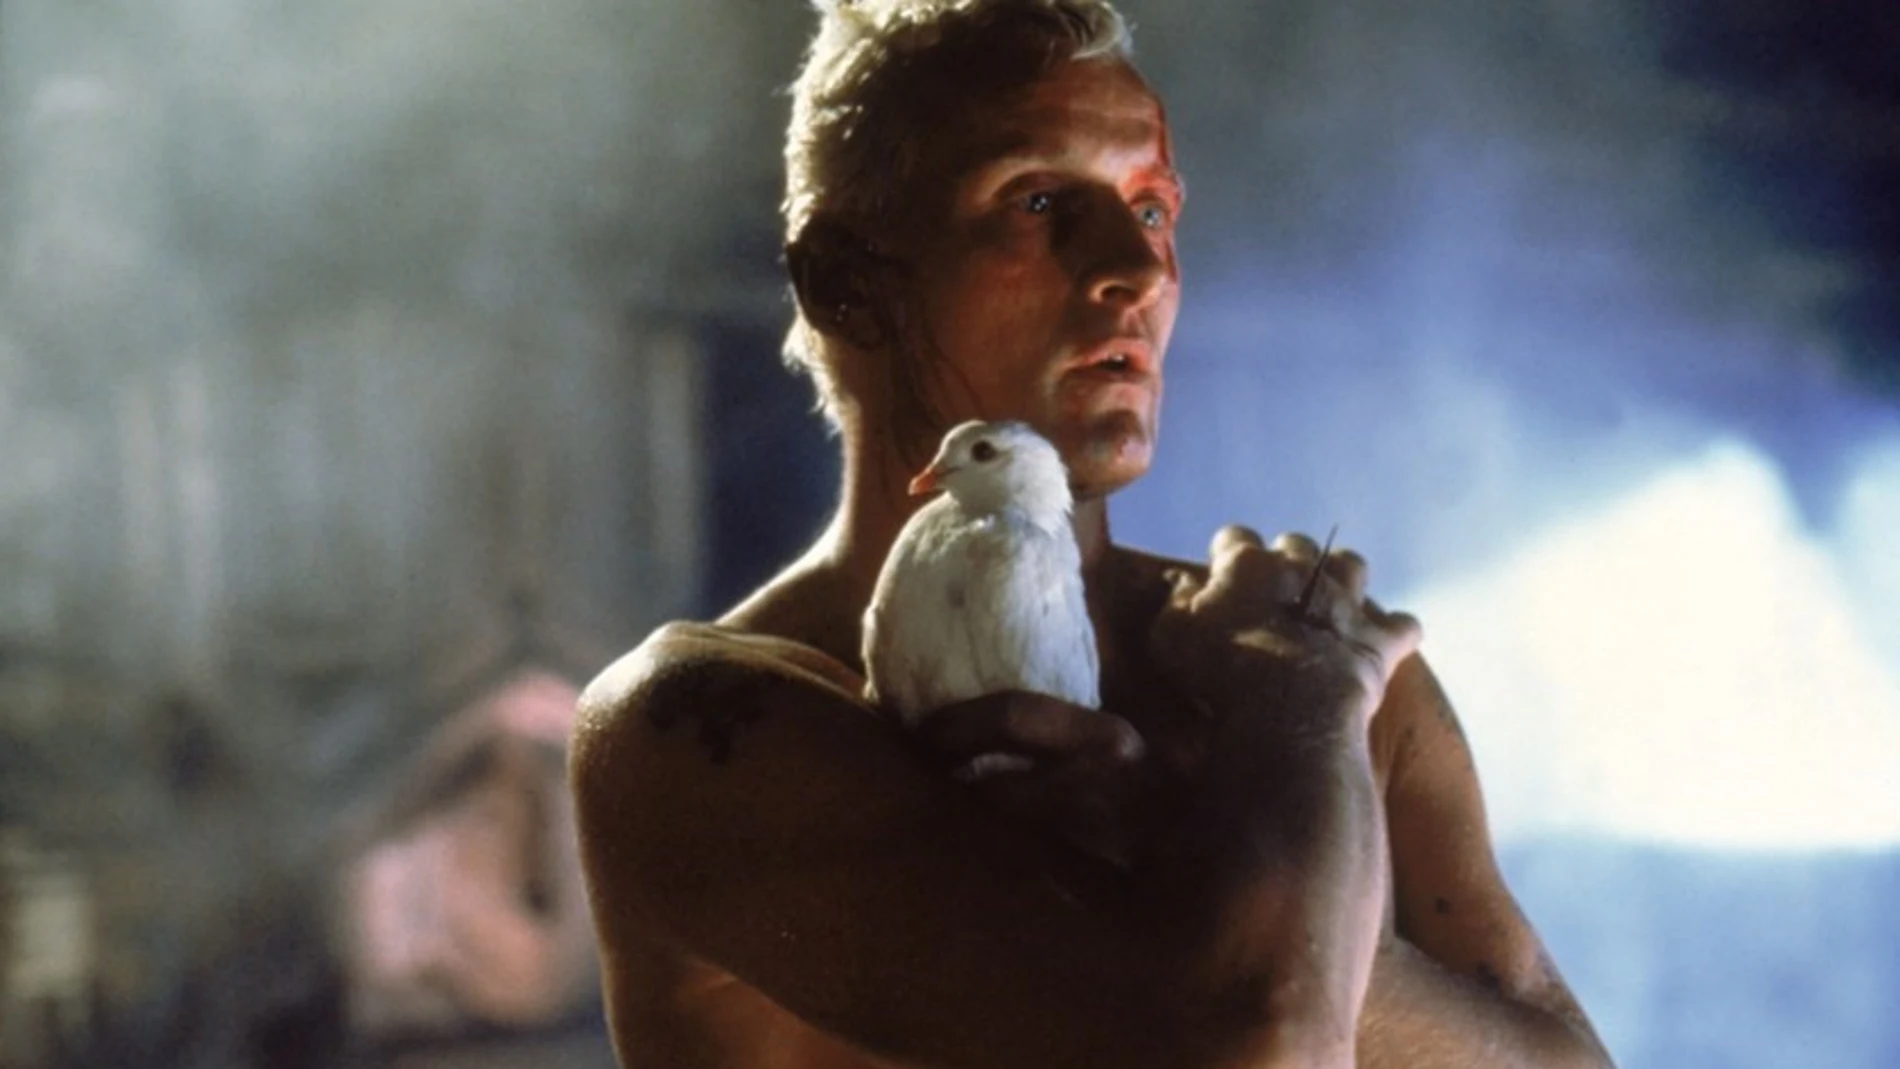 Imagen de la película "Blade Runner" donde sale Rutger Hauer en el papel de Roy Batty sujetando una paloma blanca con la mirada perdida.